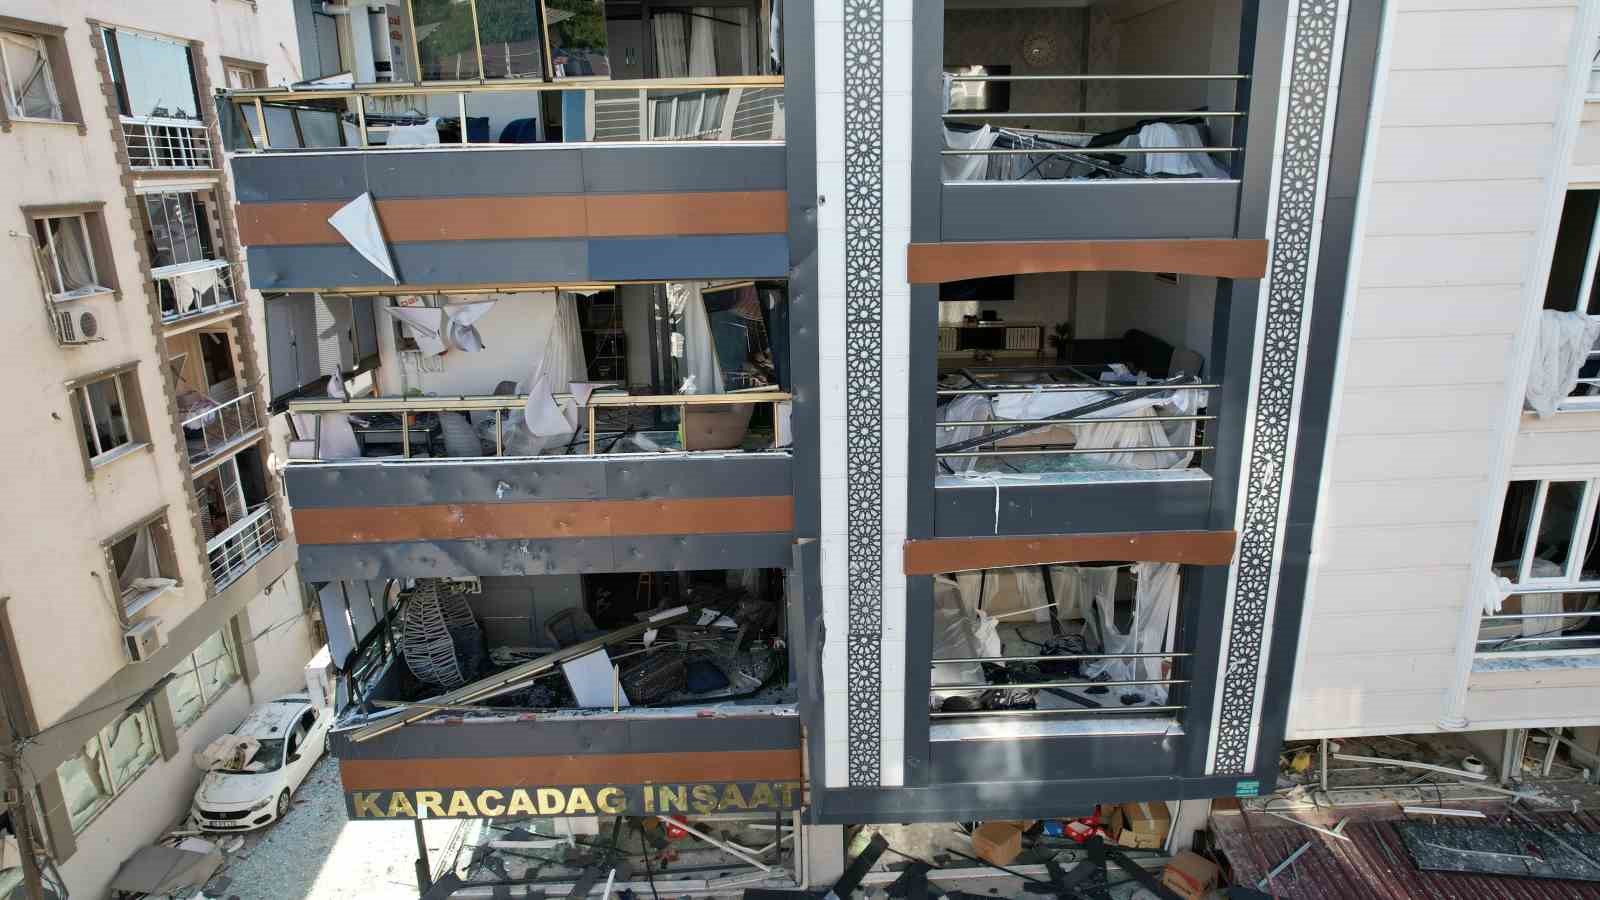 İzmir’deki patlamada 5 kişi öldü, 57 kişi yaralandı